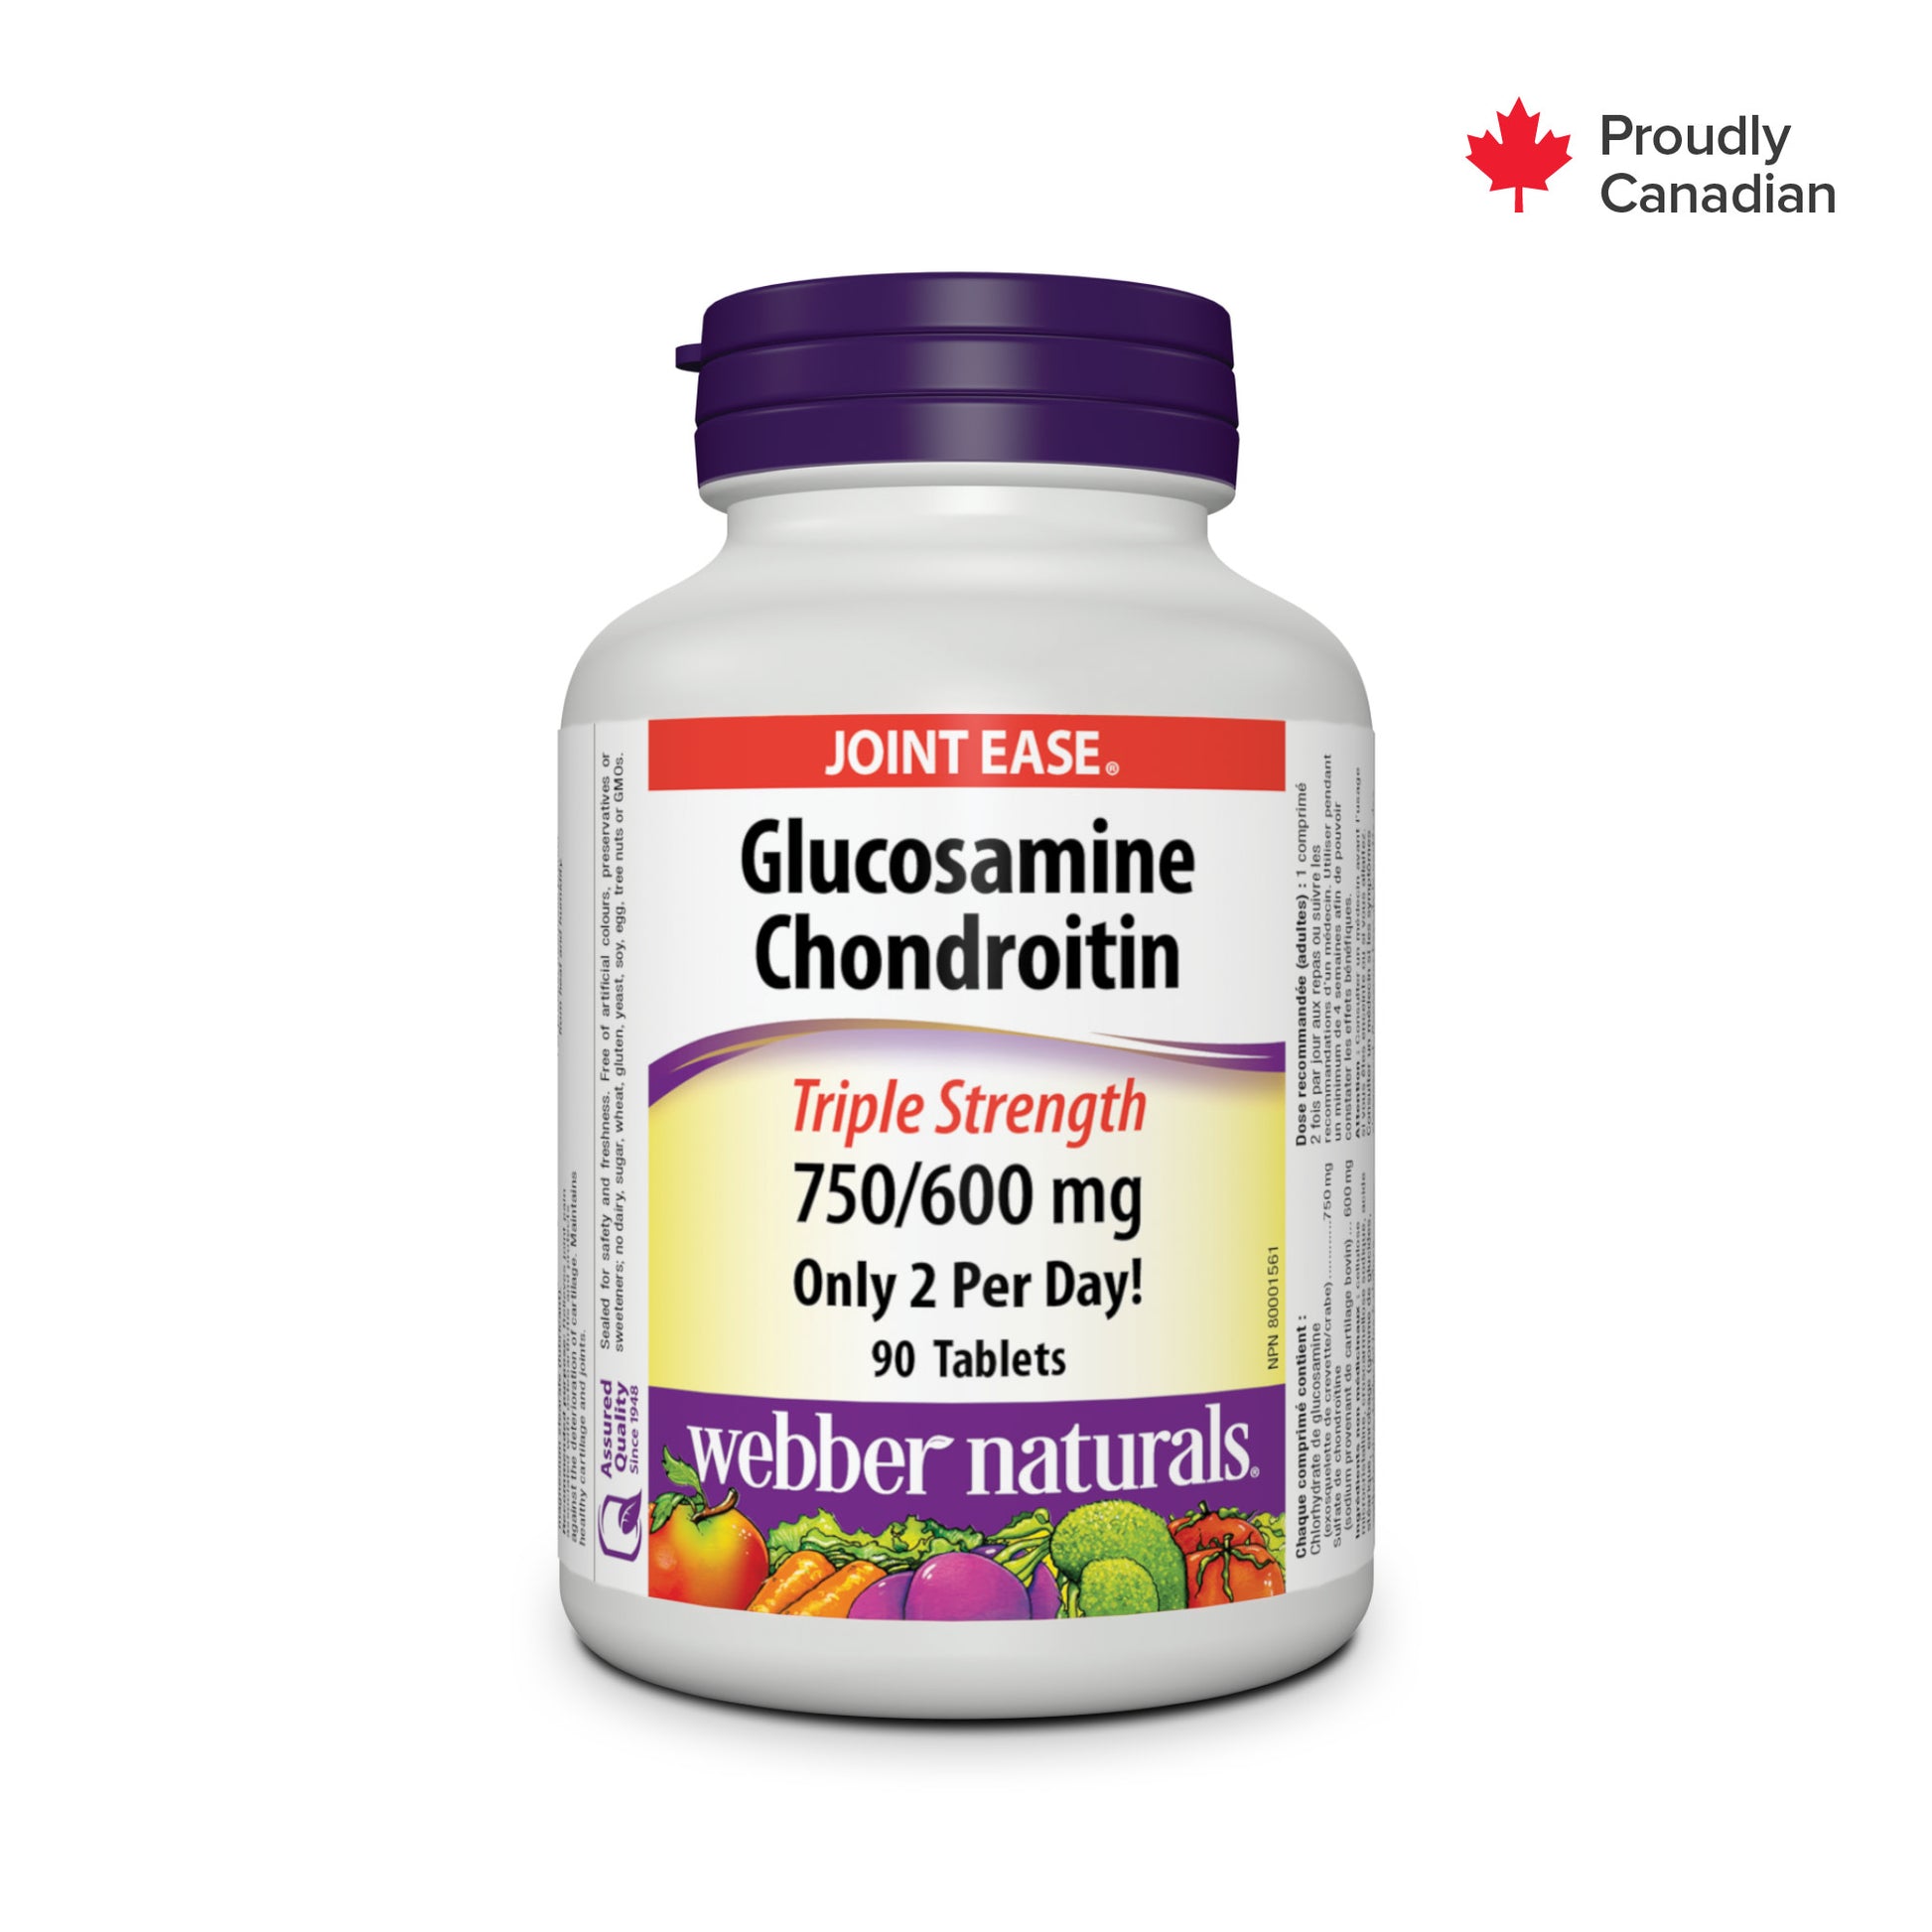 Glucosamine Chondroïtine Triple concentration 750/600 mg for Webber Naturals|v|hi-res|WN5033